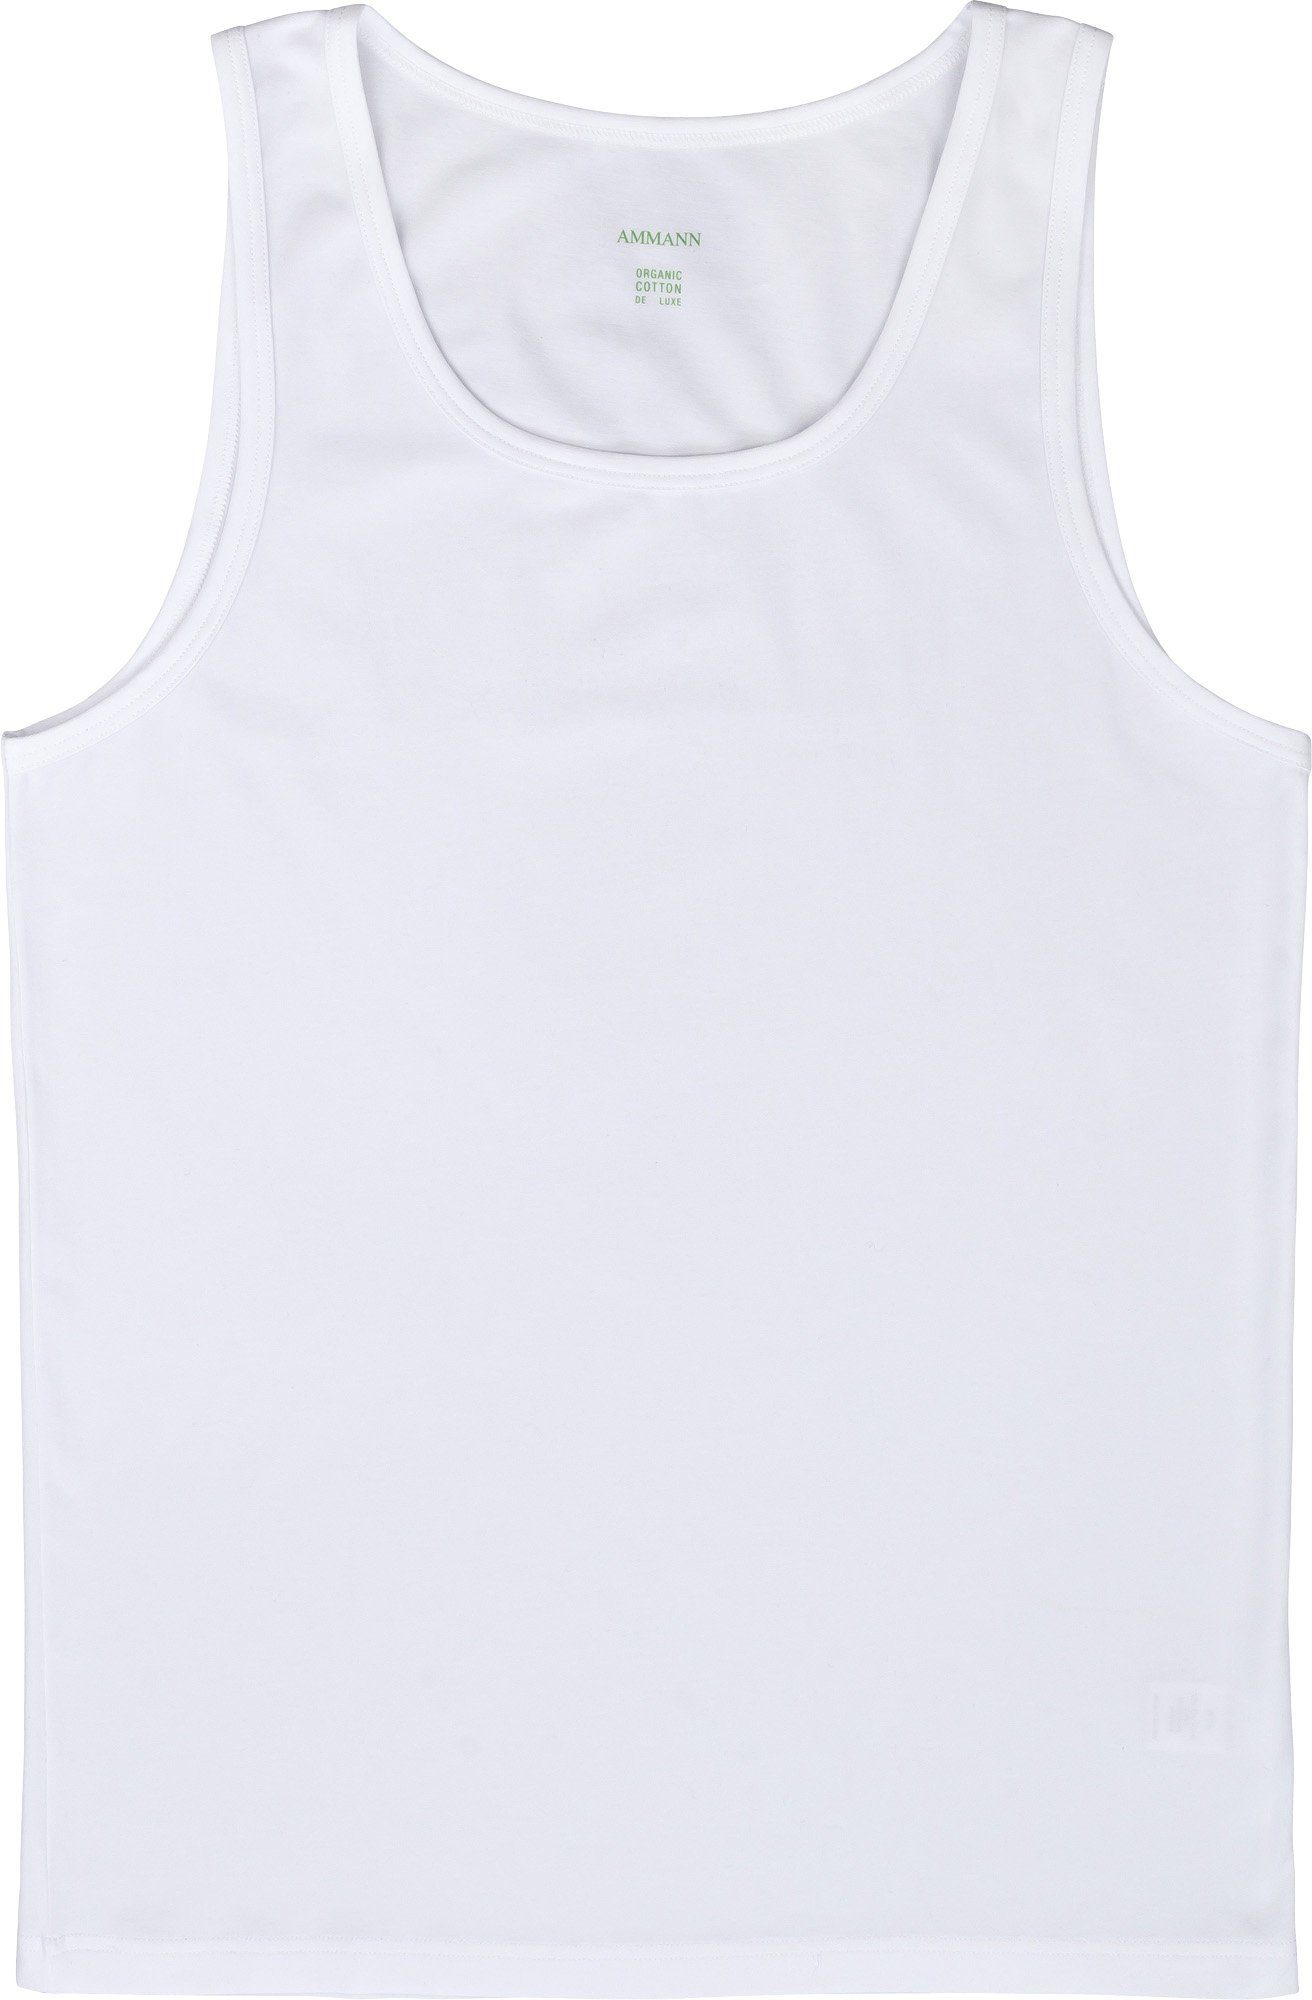 Ammann Unterhemd Bio Herren-Unterhemd Single-Jersey Uni weiß